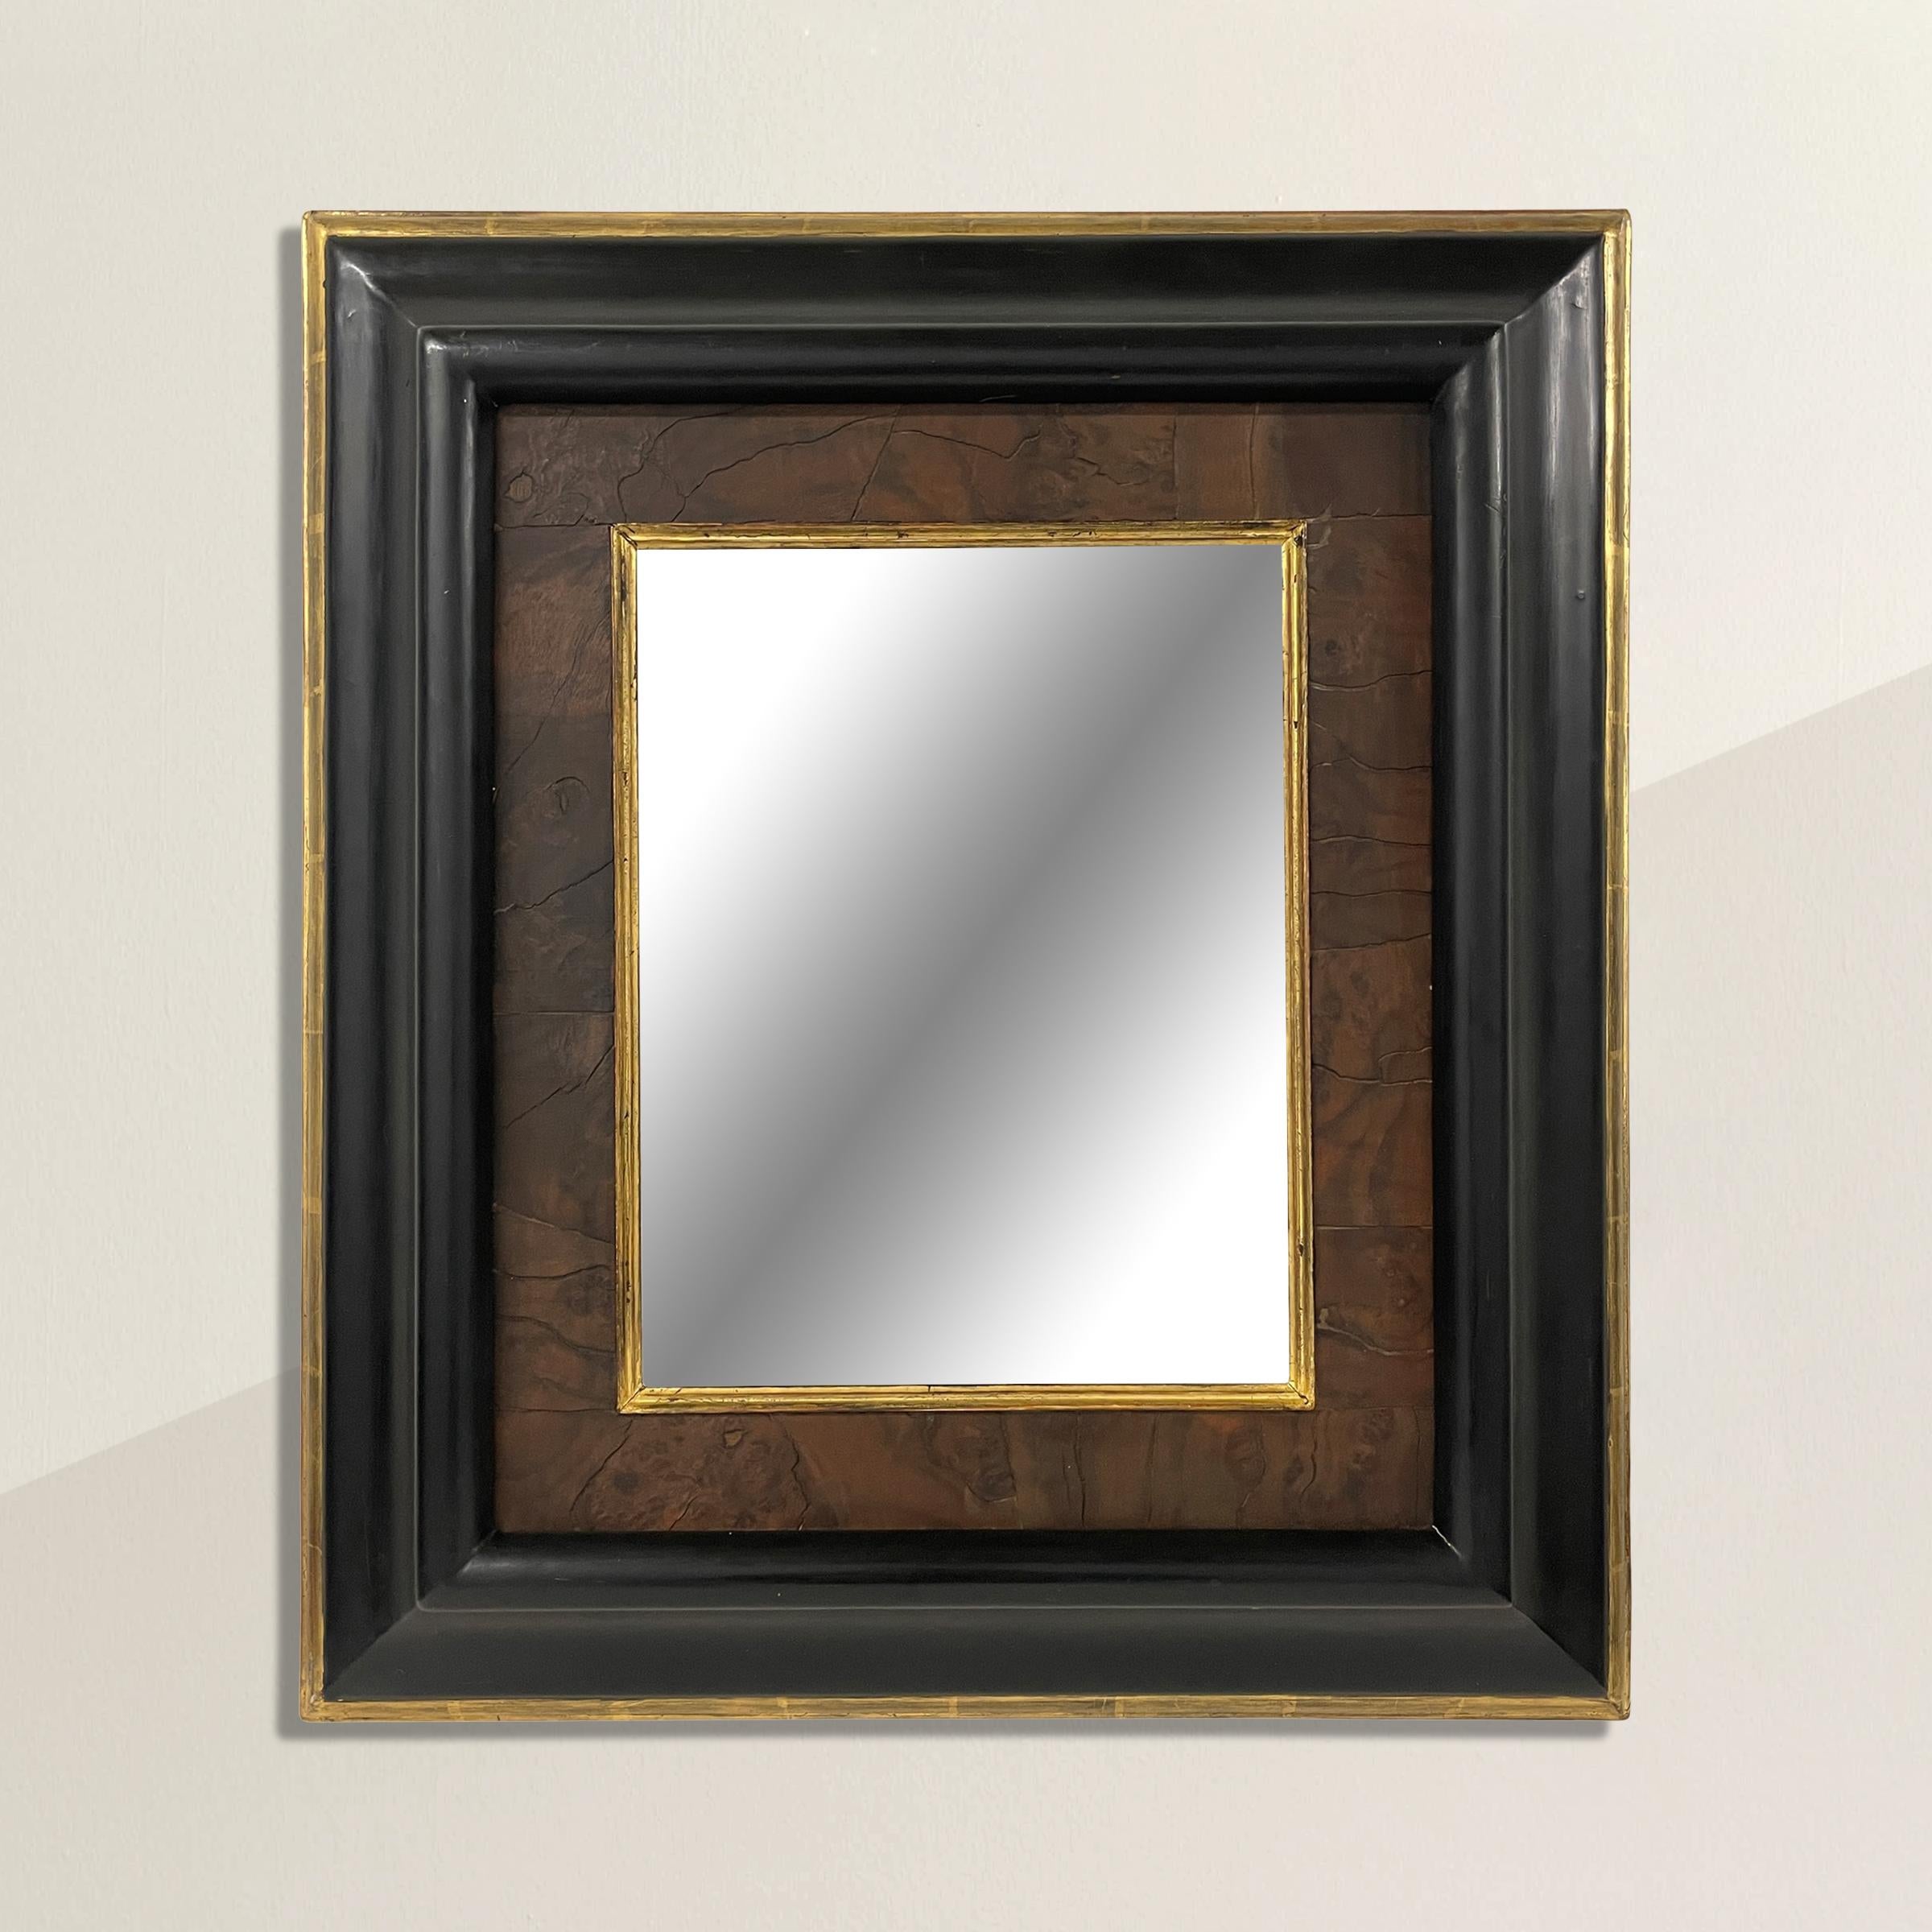 Un miroir à cadre américain intemporel du 20e siècle avec un profil profond, un filet de bois de ronce avec un bord en feuille d'or. Parfait au-dessus du lavabo dans votre salle d'eau, au-dessus d'une console dans votre entrée, ou n'importe où